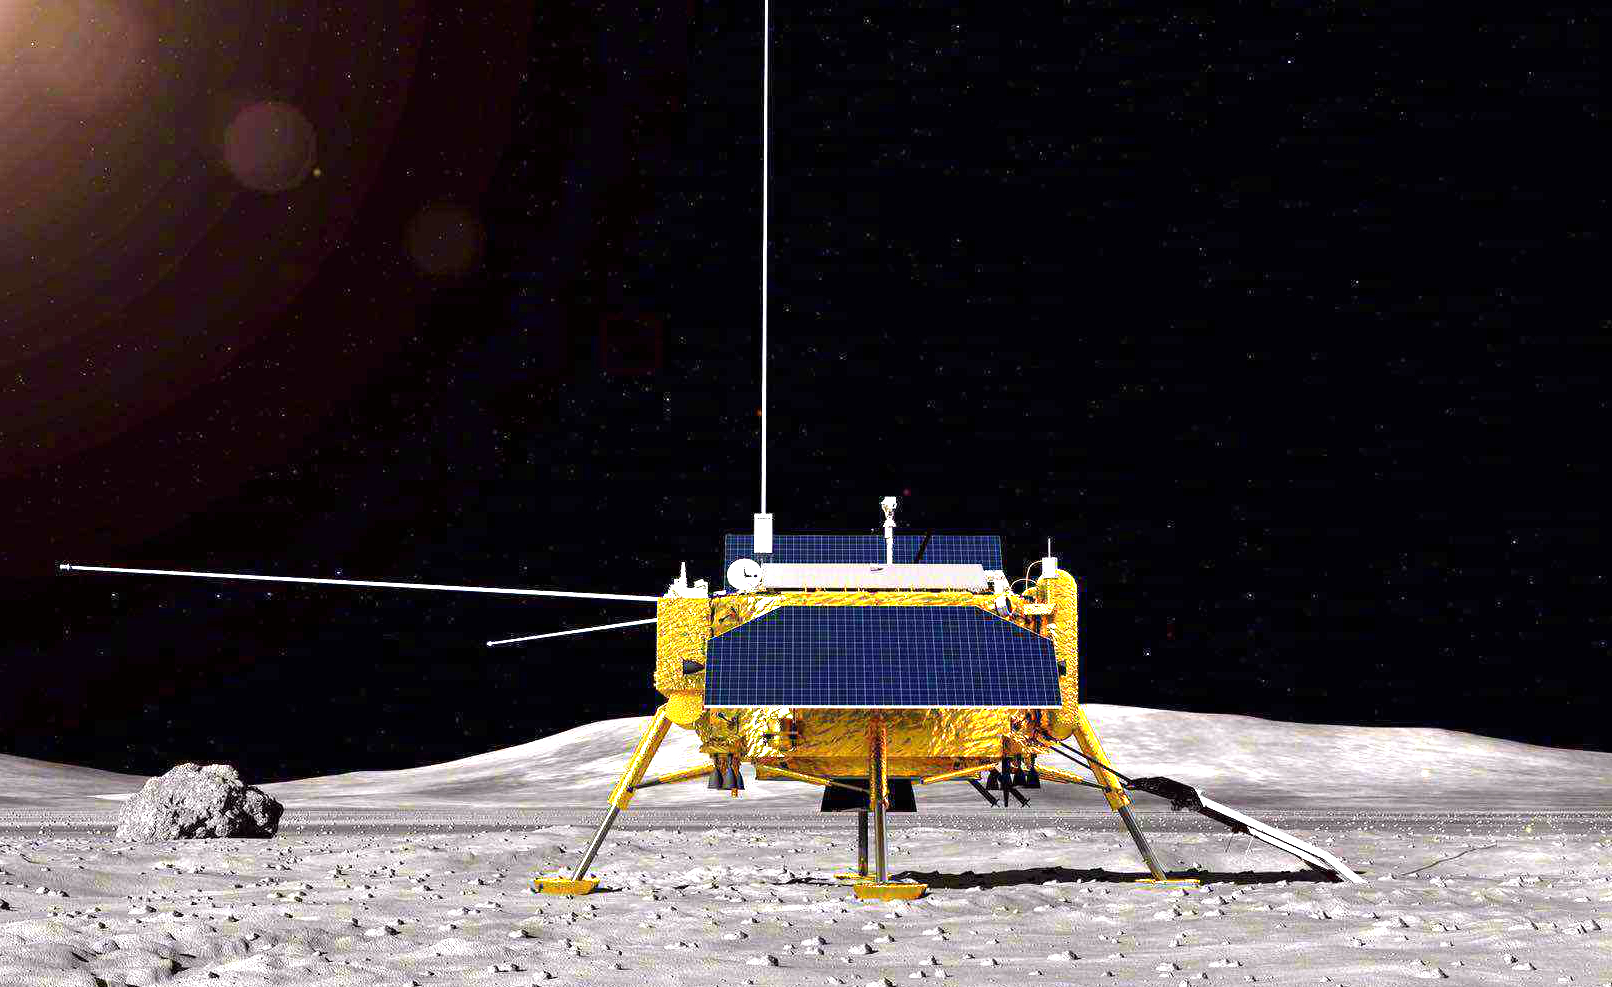 鹊桥卫星模型嫦娥四号探月模型玉兔二号模型嫦娥四号模型中国探月计划模型_月球